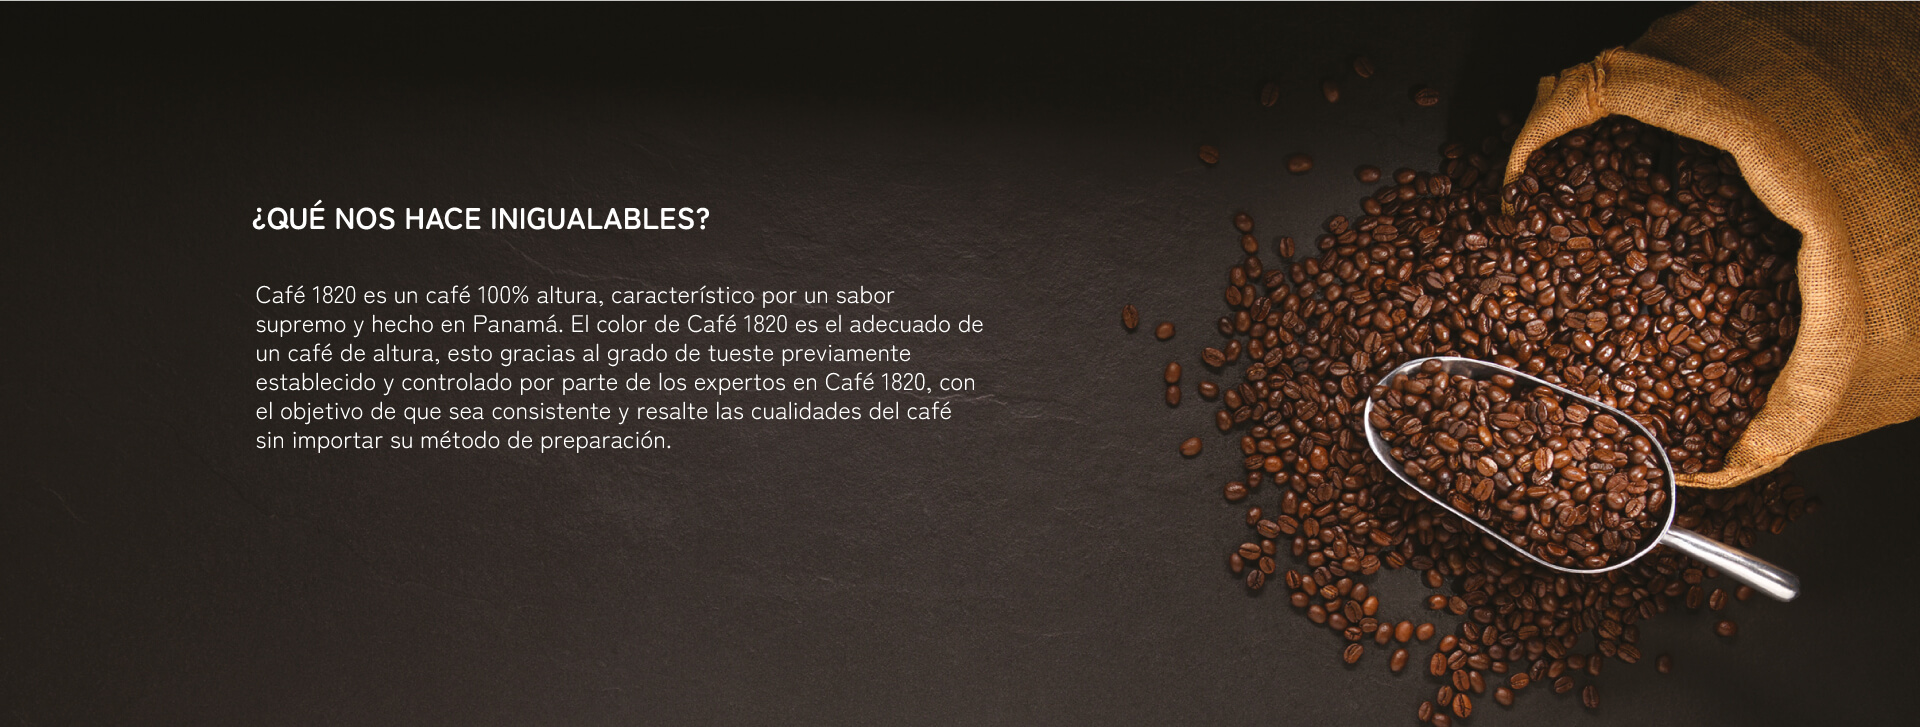 café 1820 hecho en Panamá